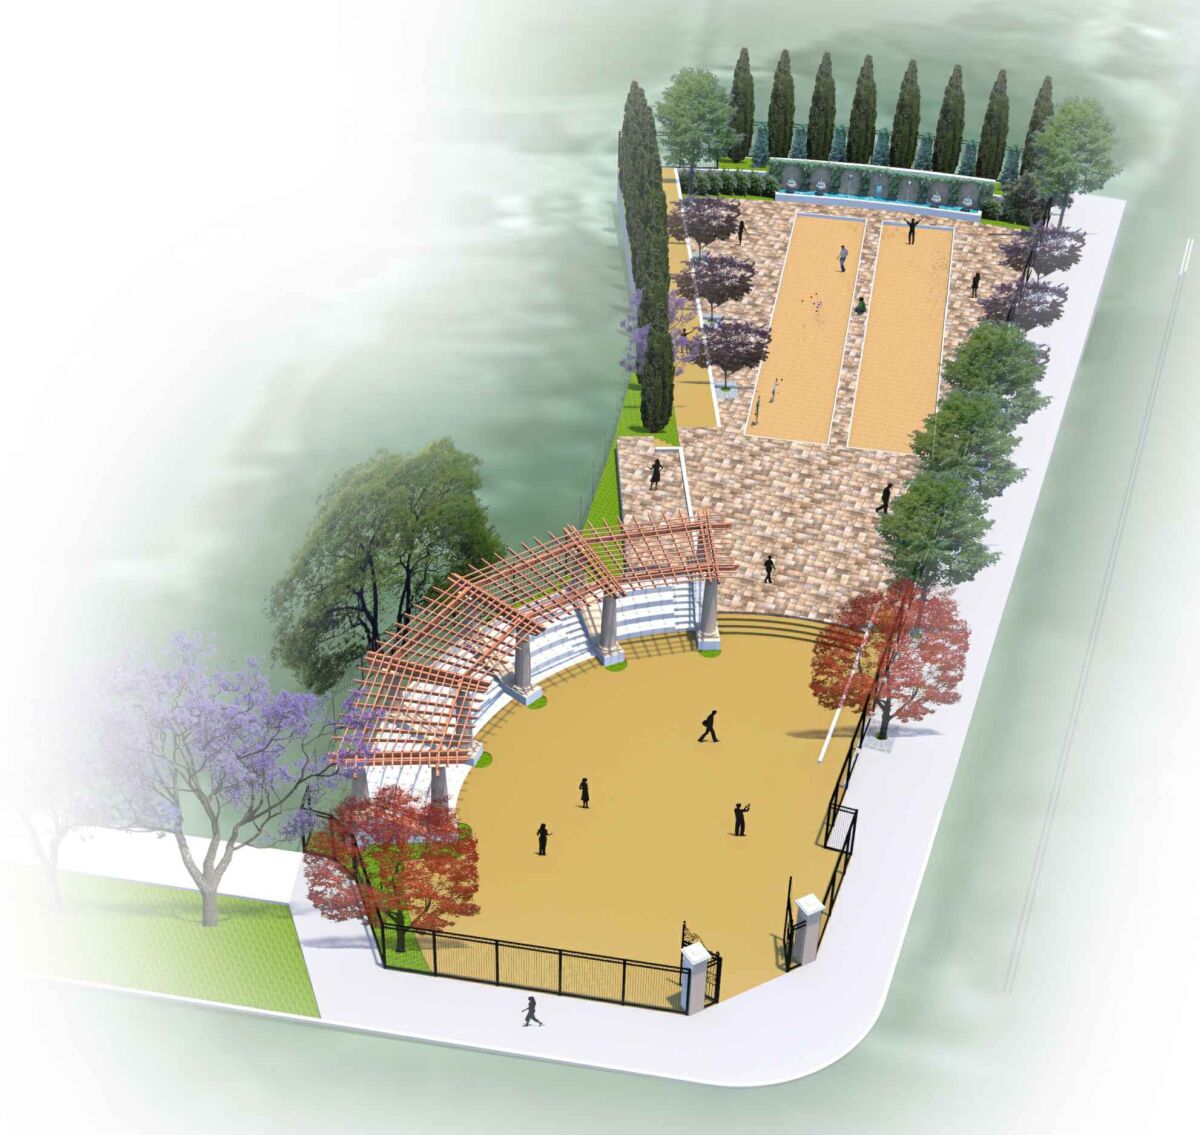 Una representación de los desarrollos planificados en Amici Park